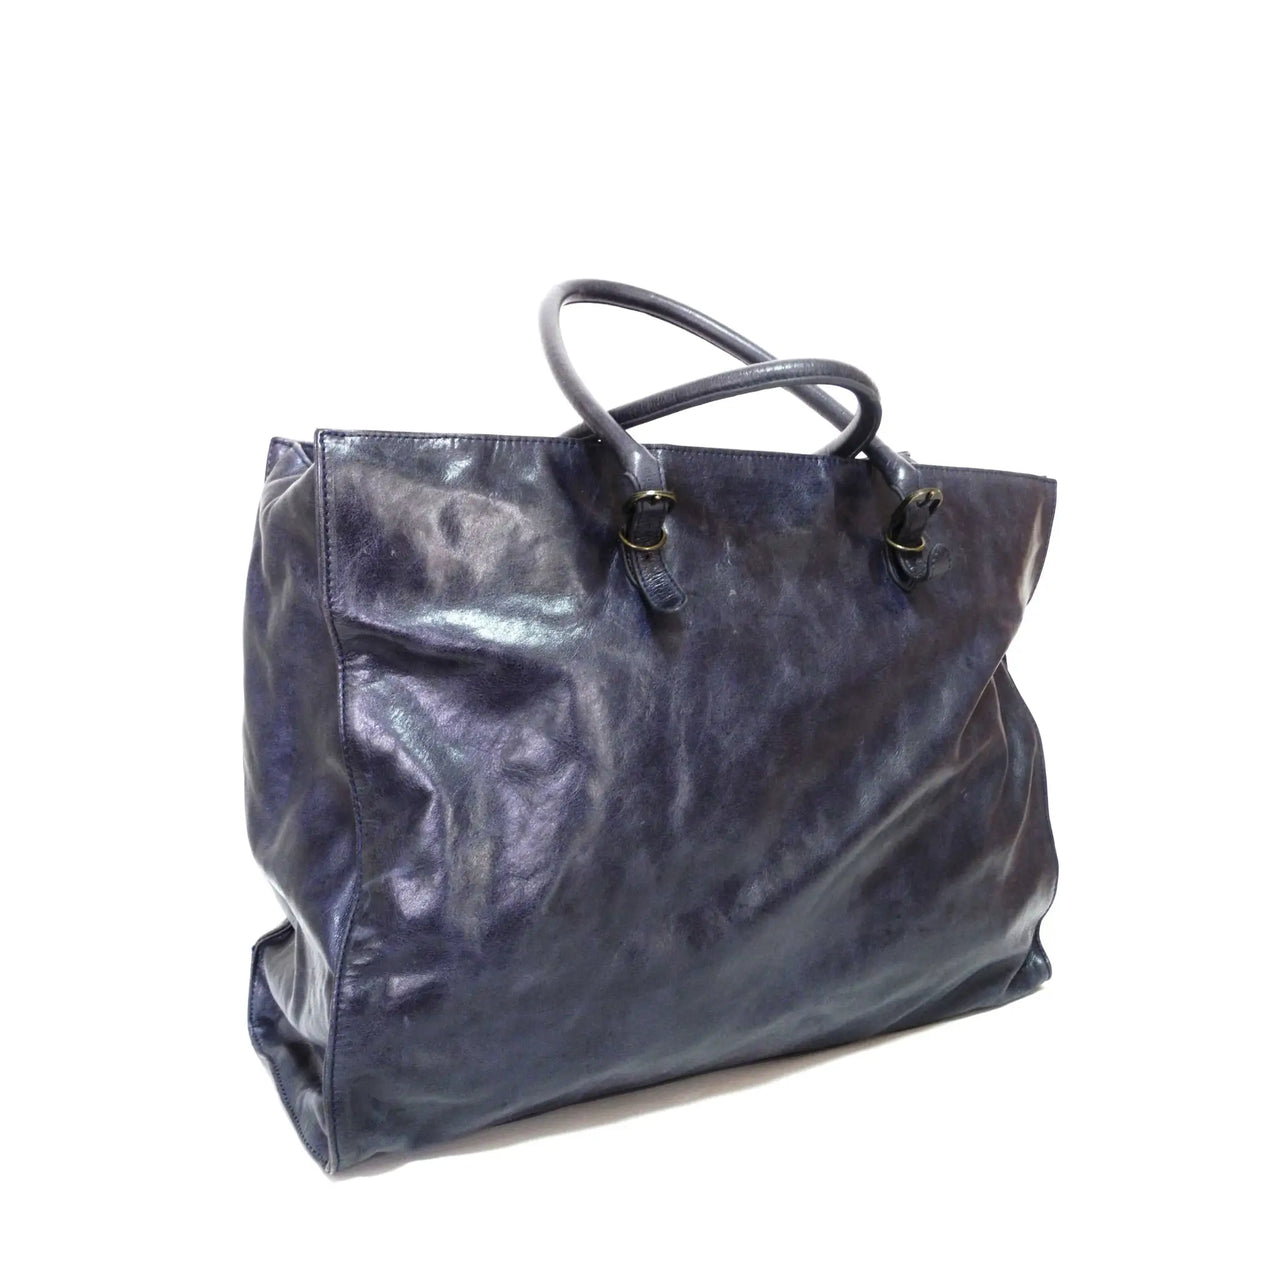 Balenciaga Papier A5 Leather Tote Bag, Balenciaga Handbags